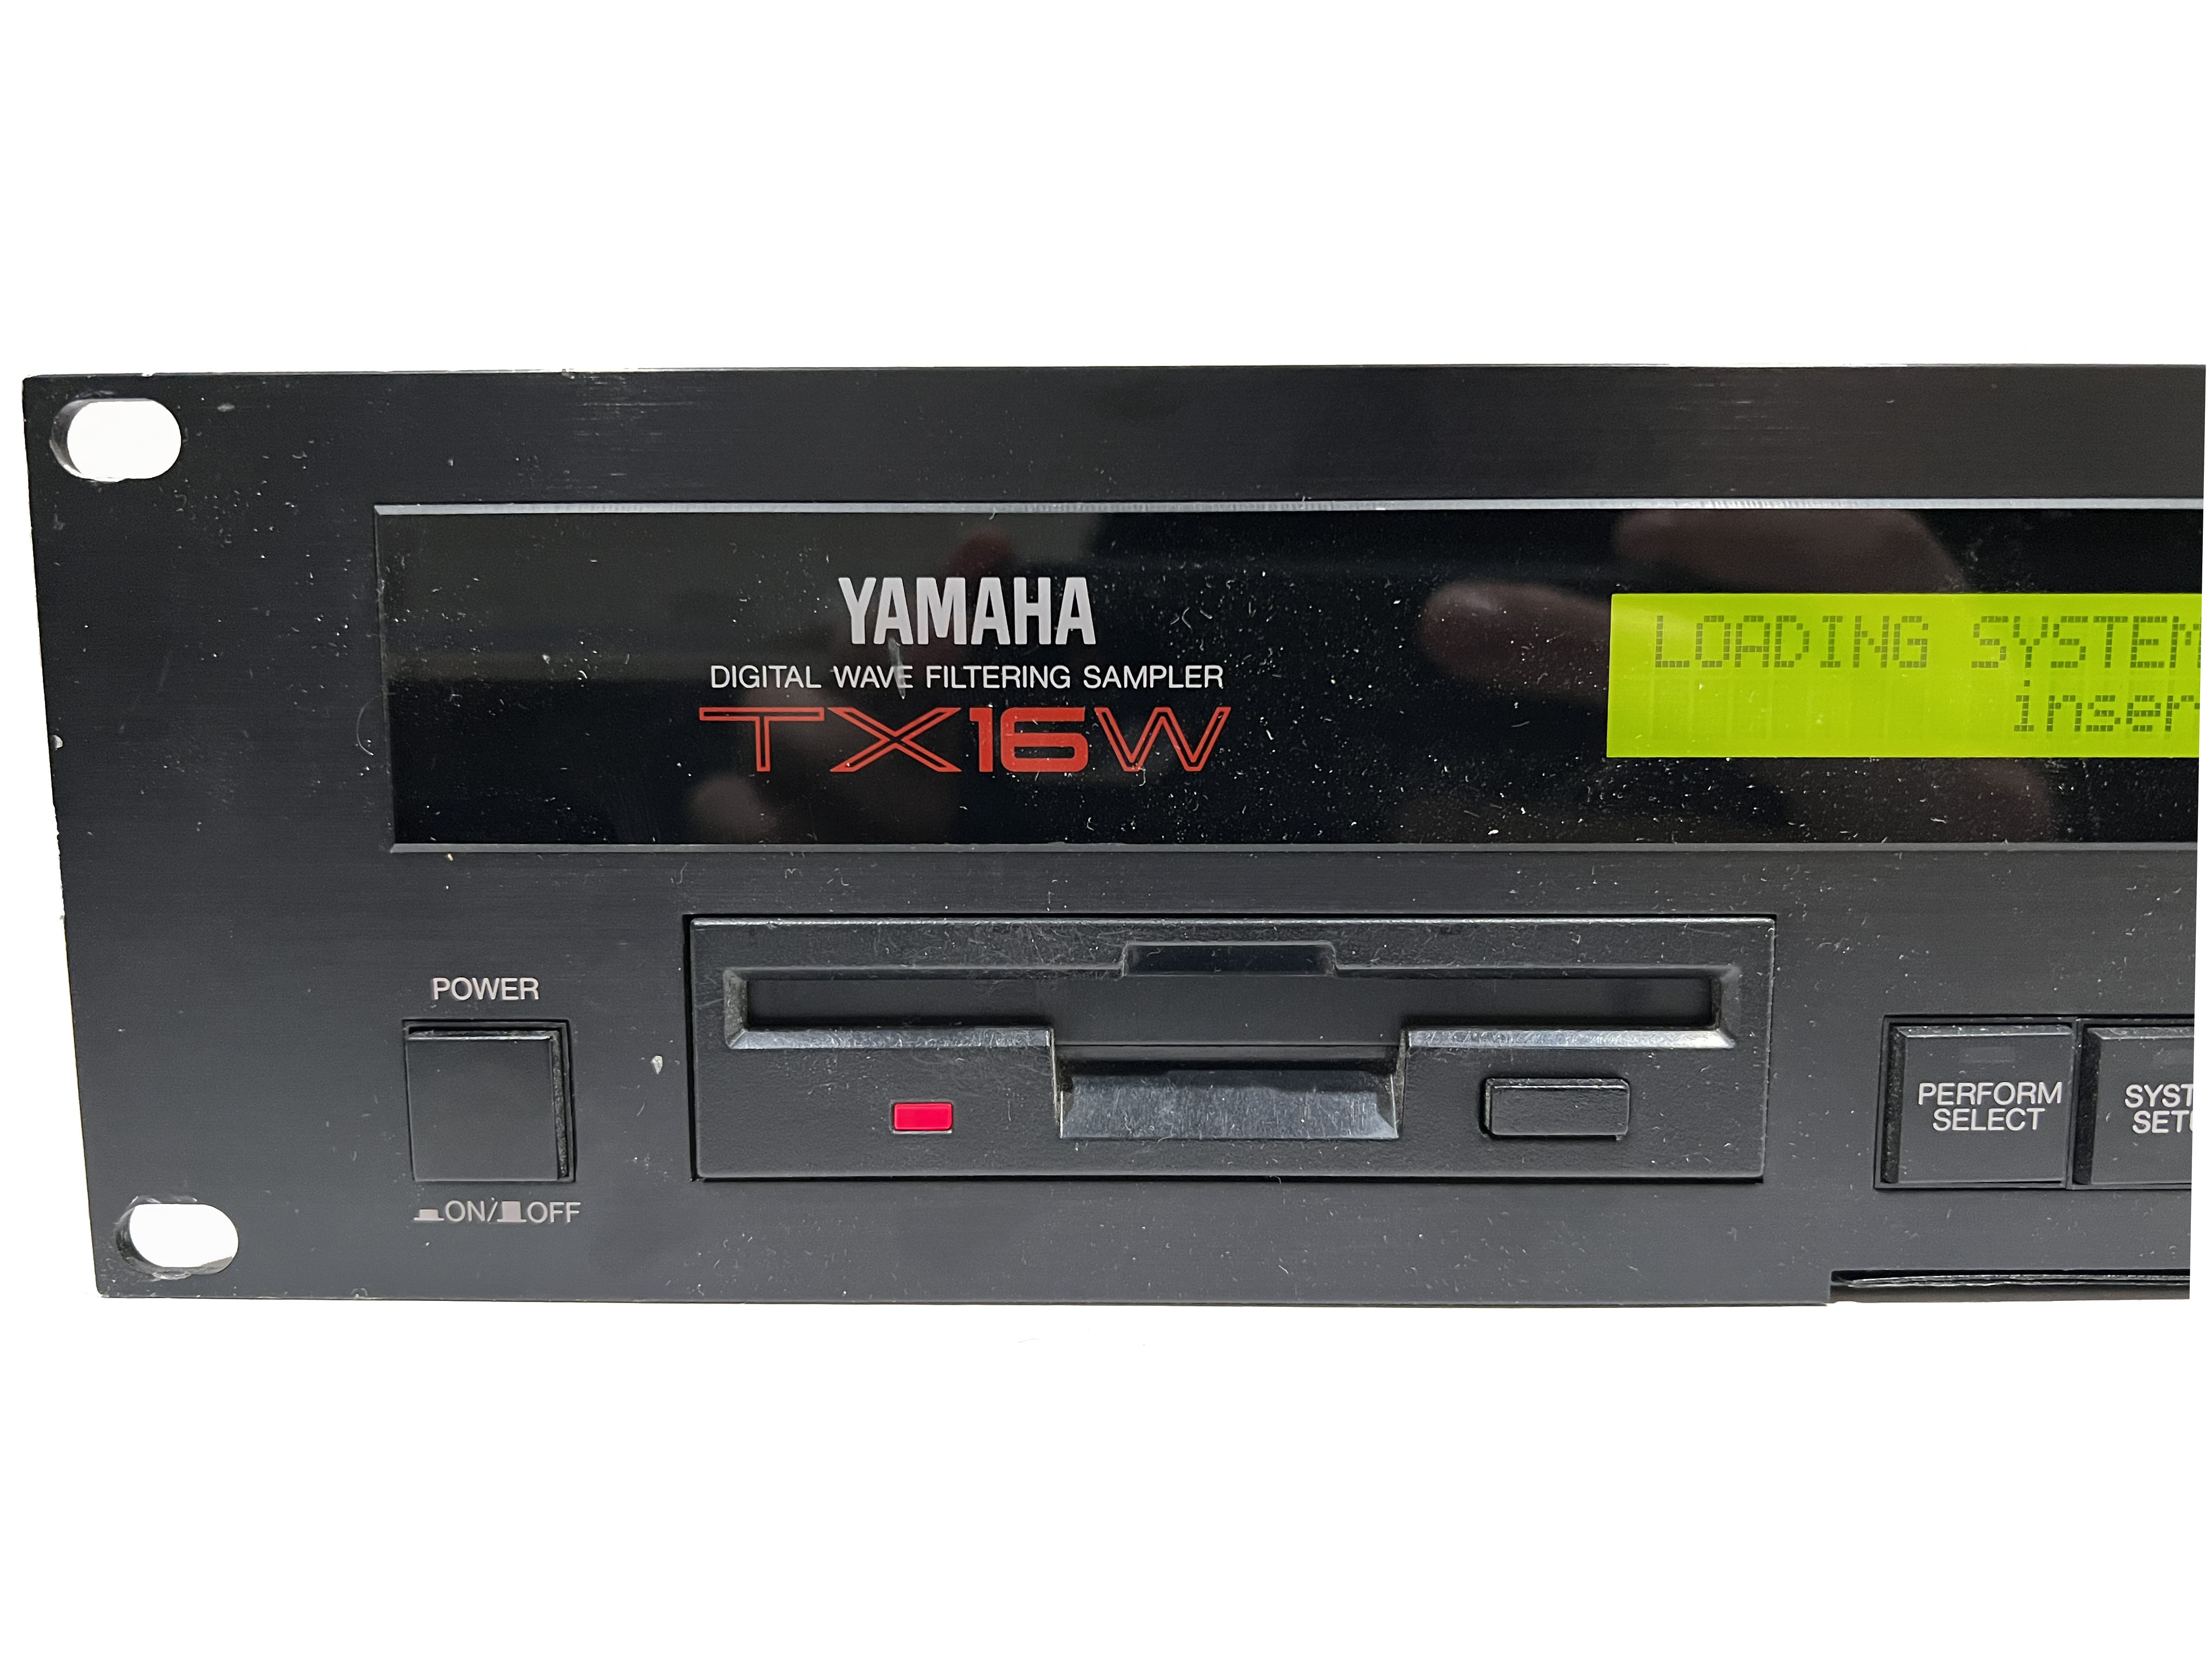 Yamaha TX16W sampler